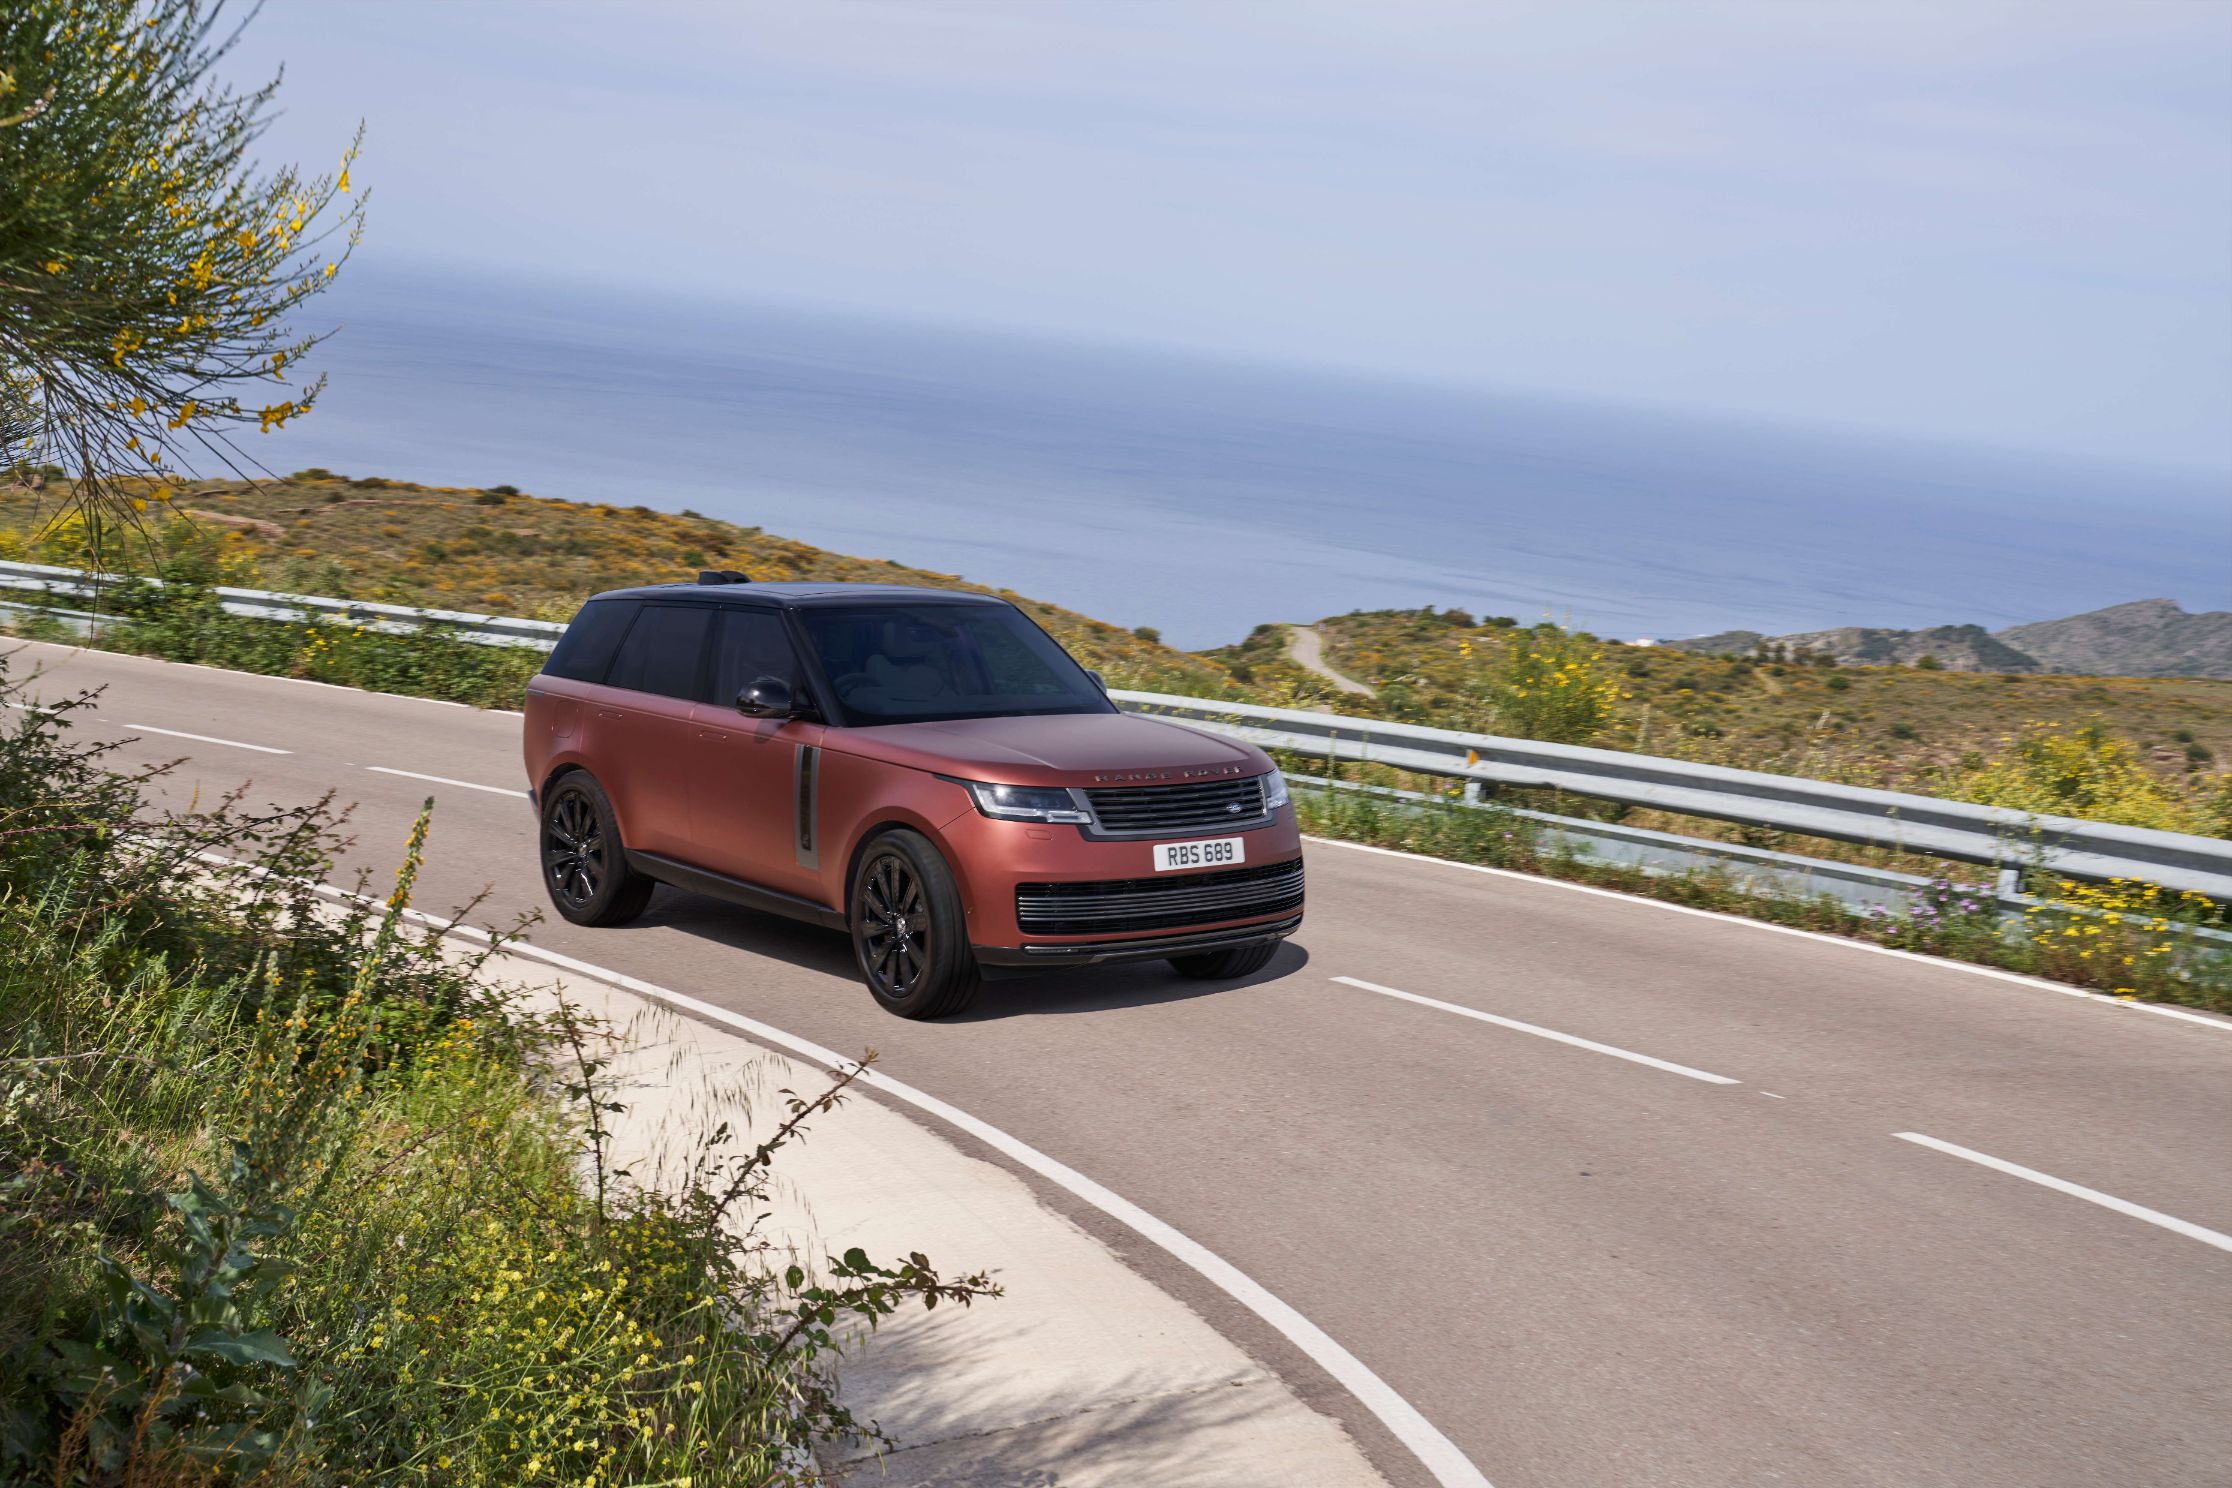 Range Rover 5 Range Rover mới ra mắt toàn cầu: Sang trọng, thiết kế đỉnh cao, giá từ 10,8 tỷ